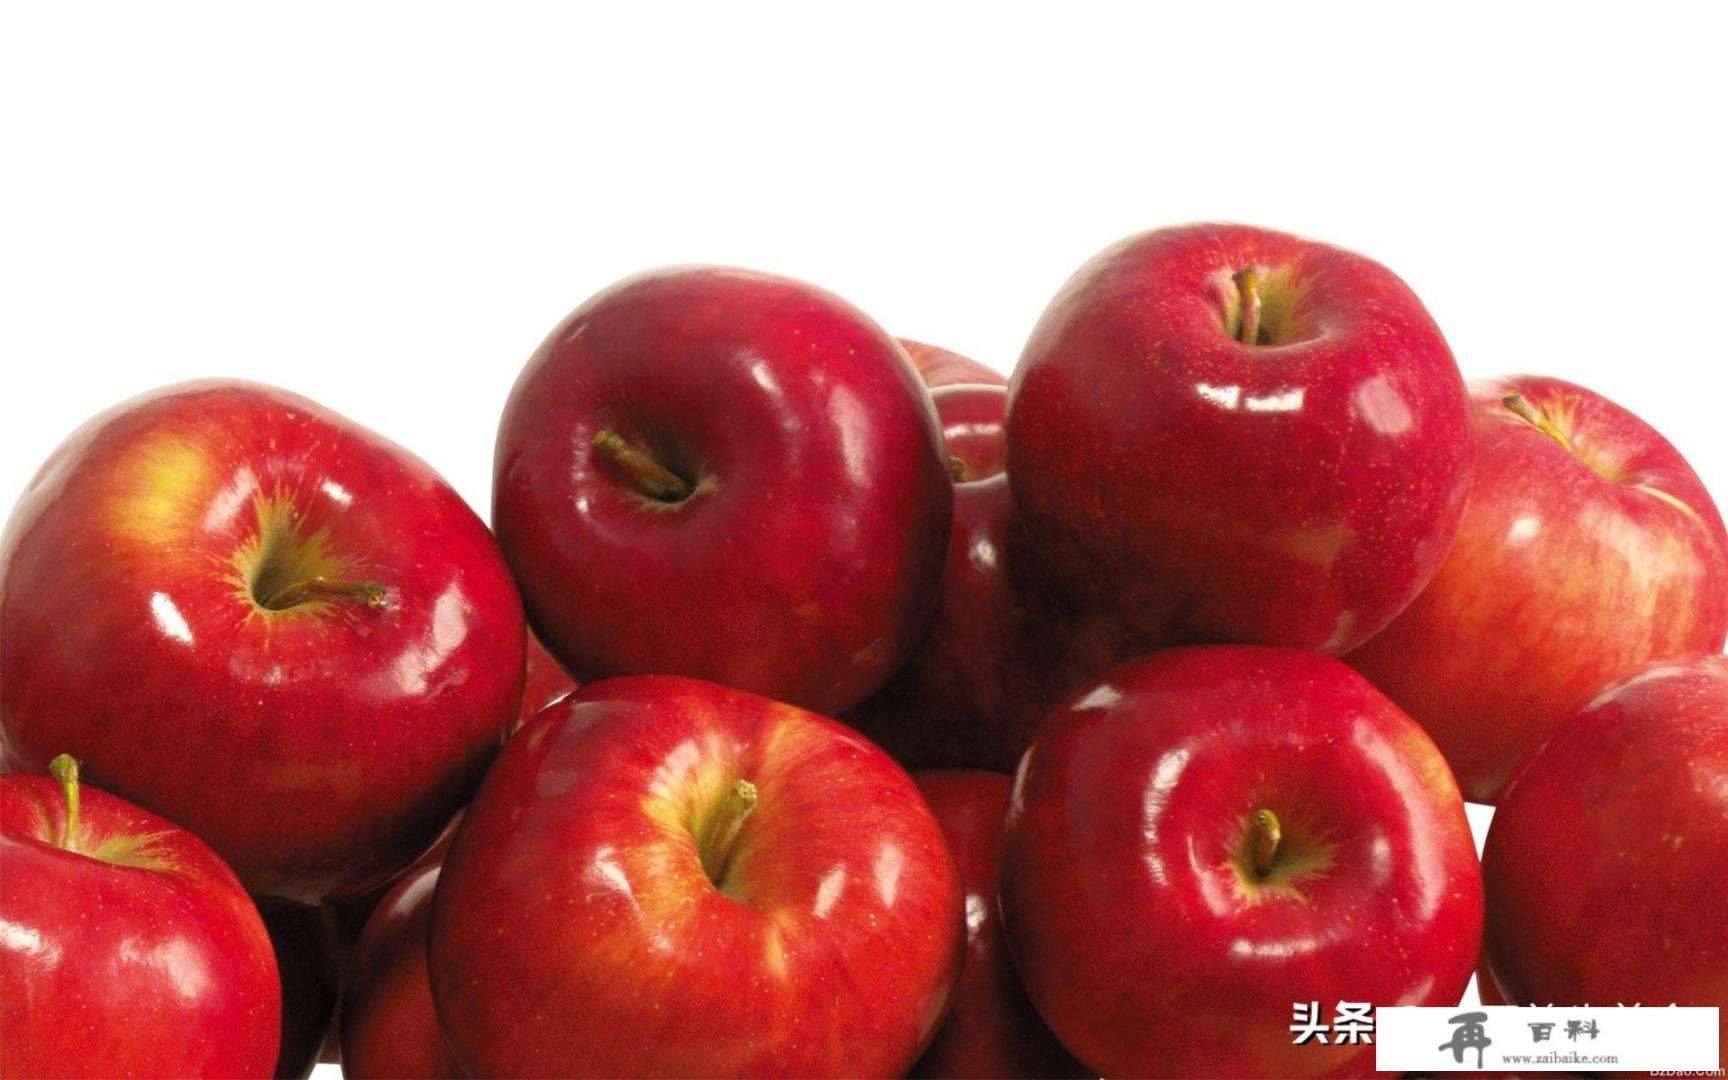 苹果外皮红色残留物是什么东西